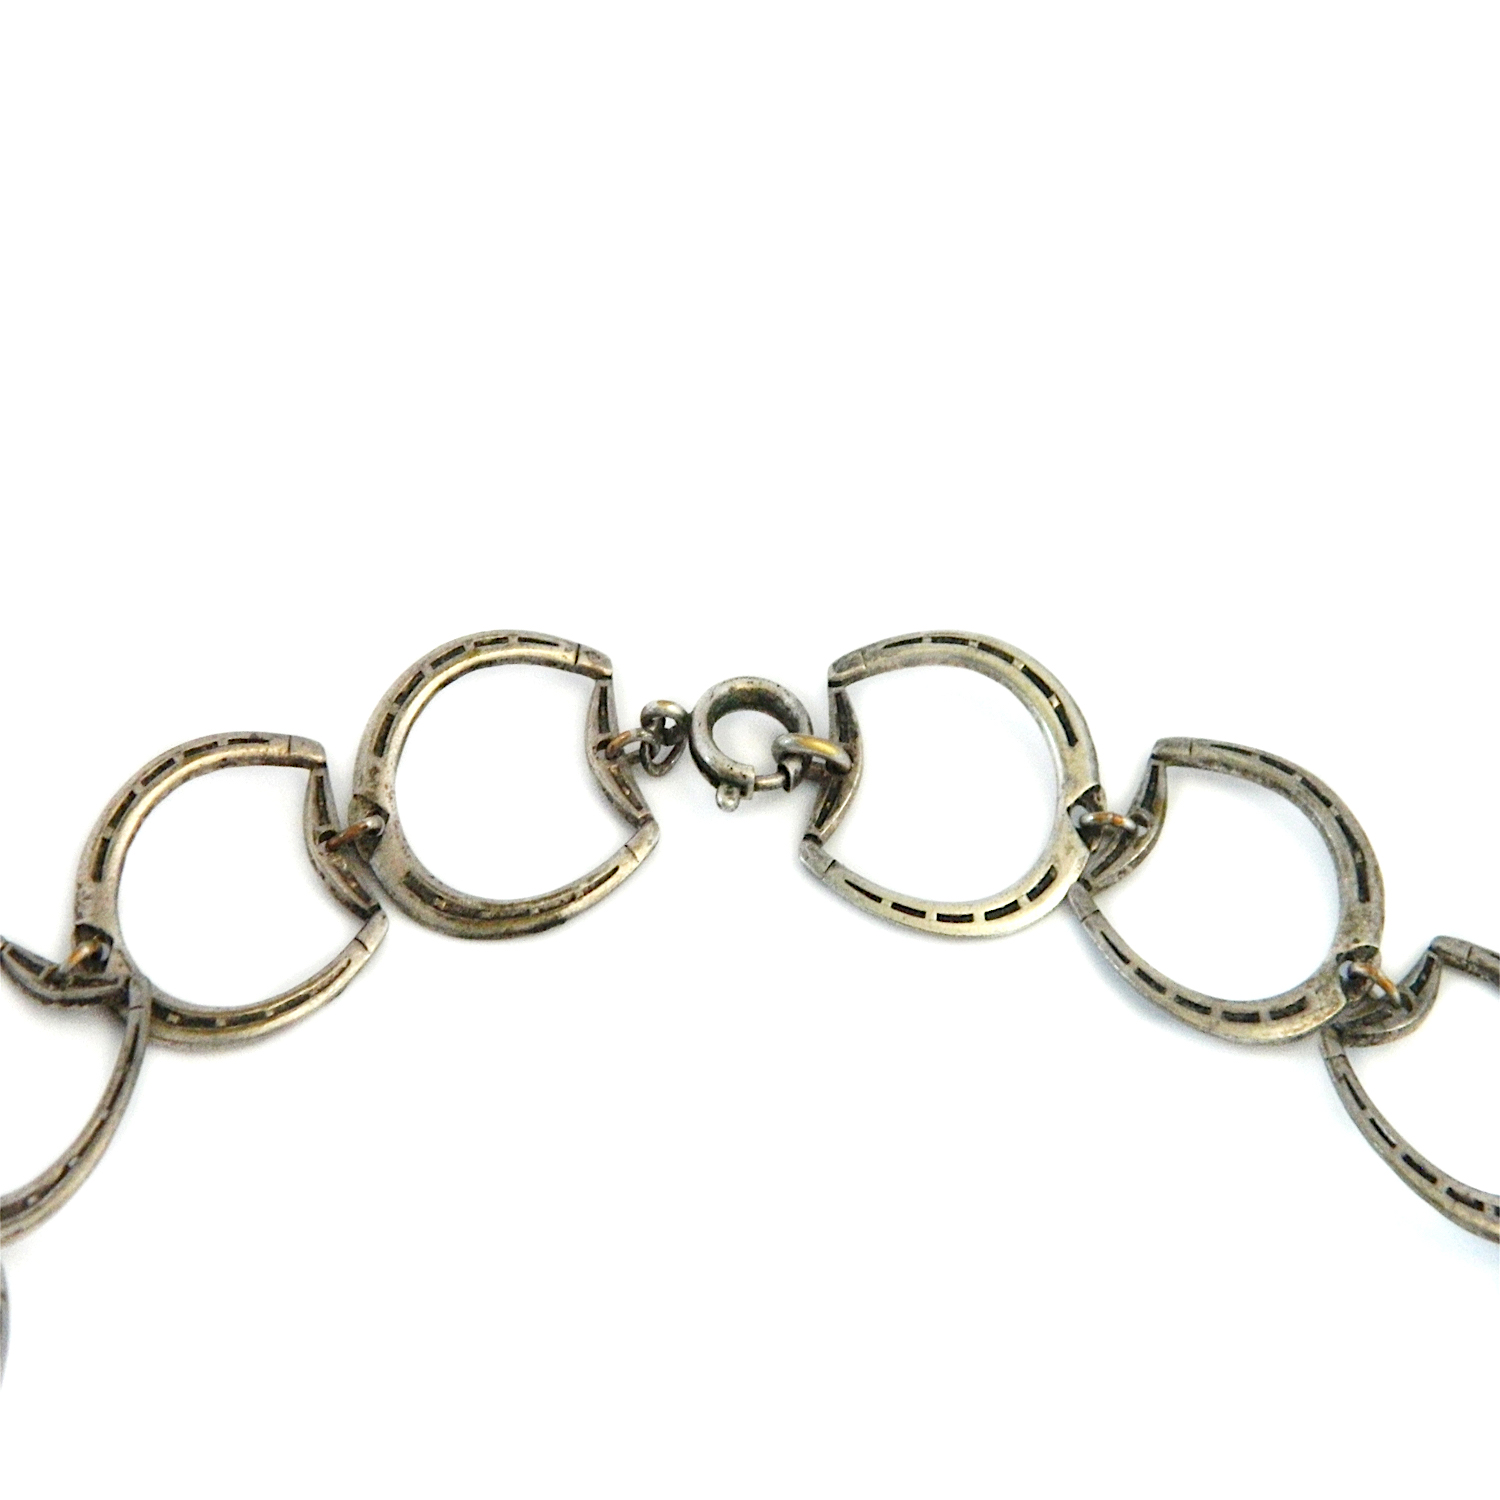 Vintage horseshoe necklace